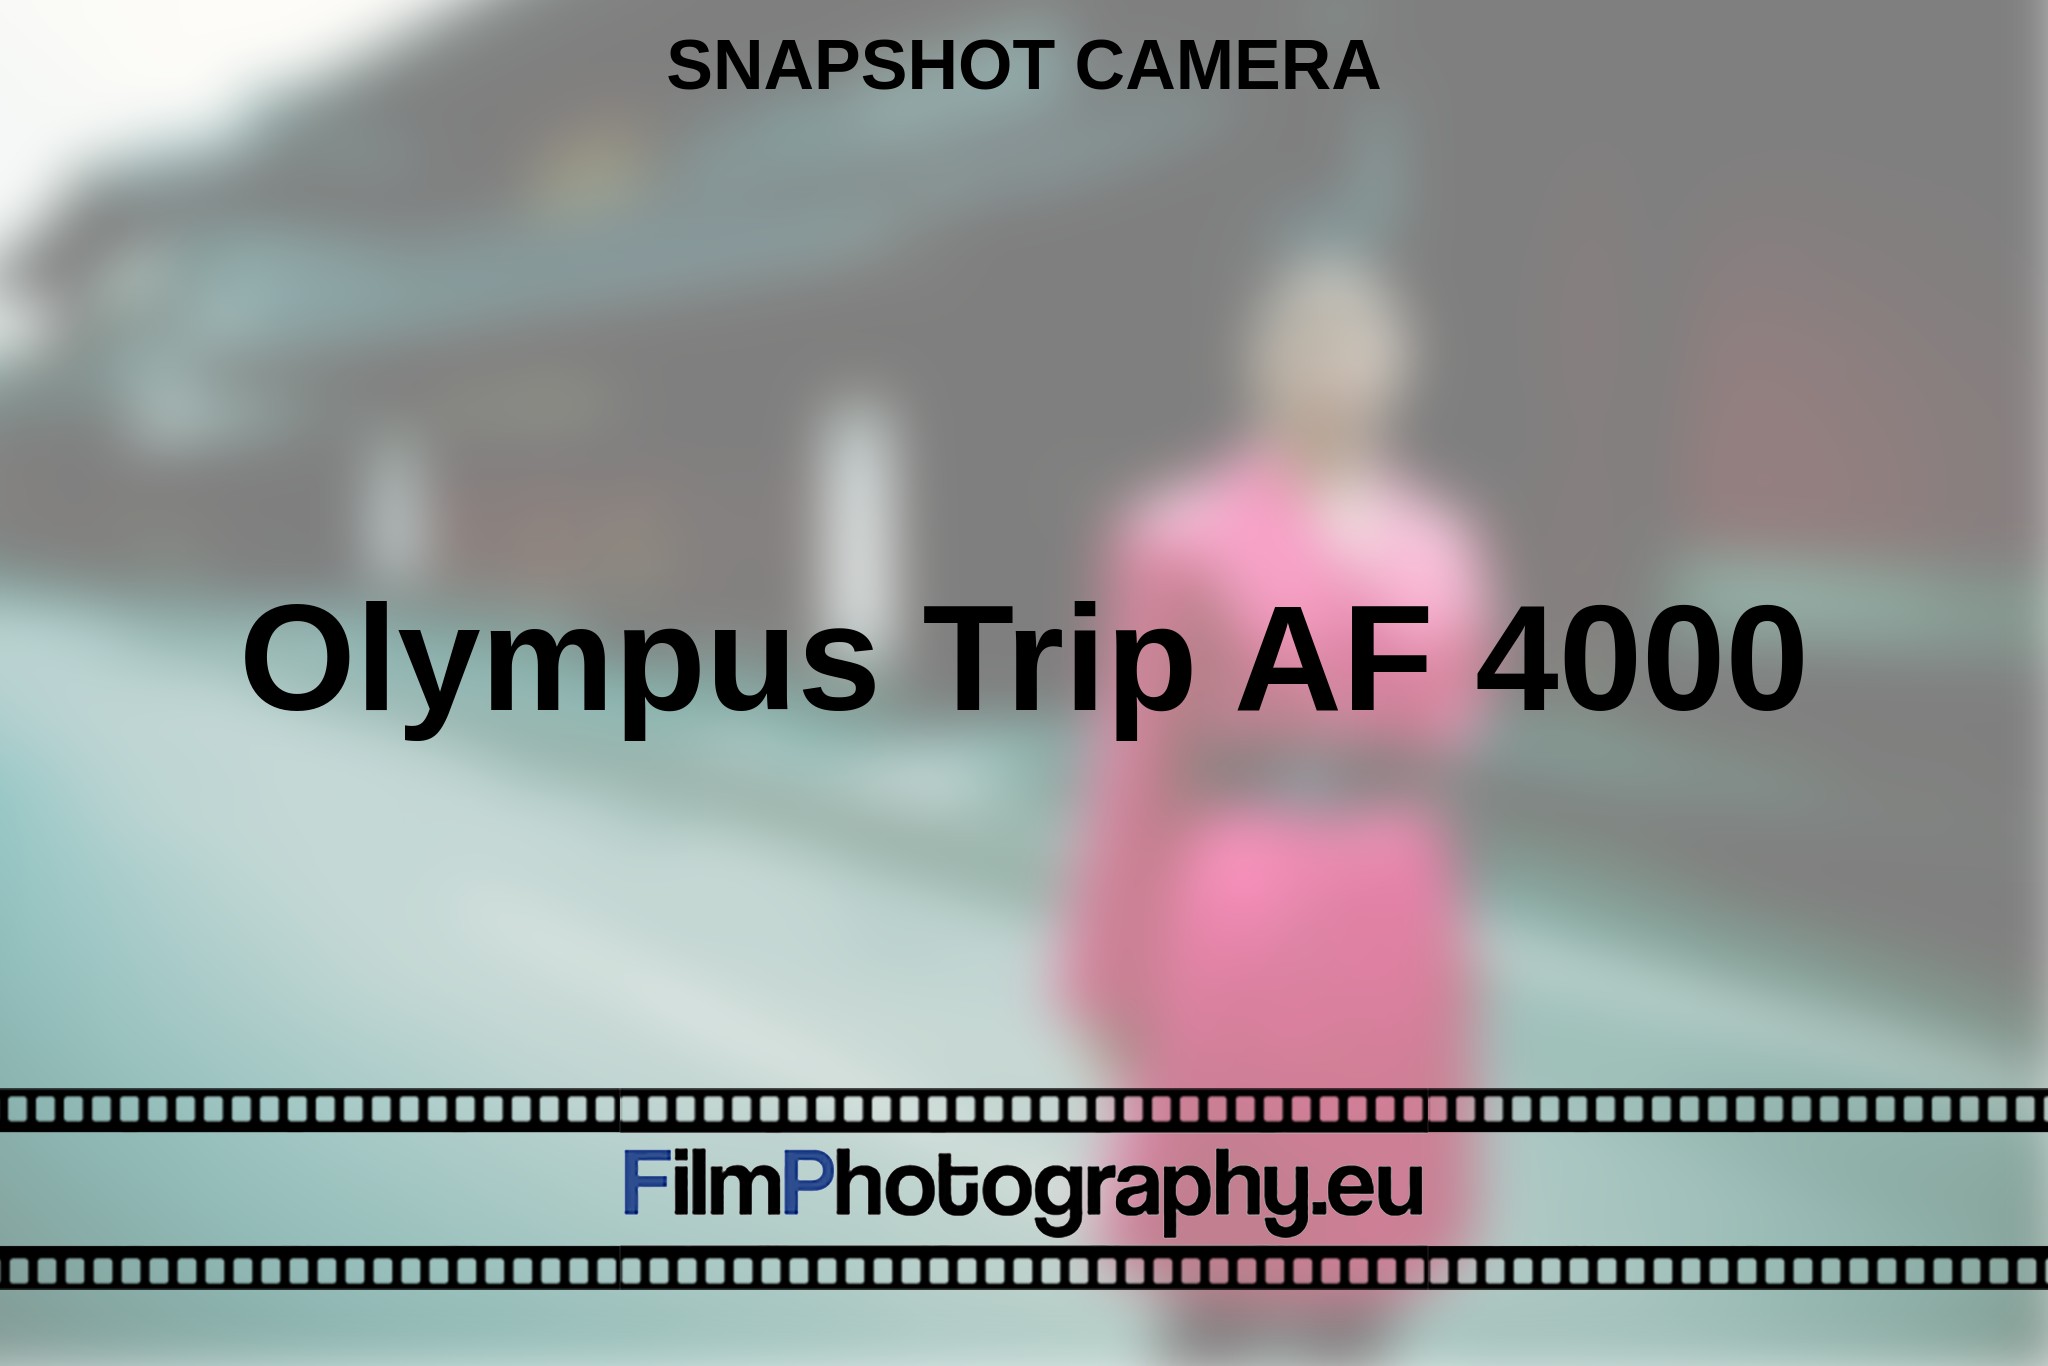 olympus-trip-af-4000-snapshot-camera-en-bnv.jpg